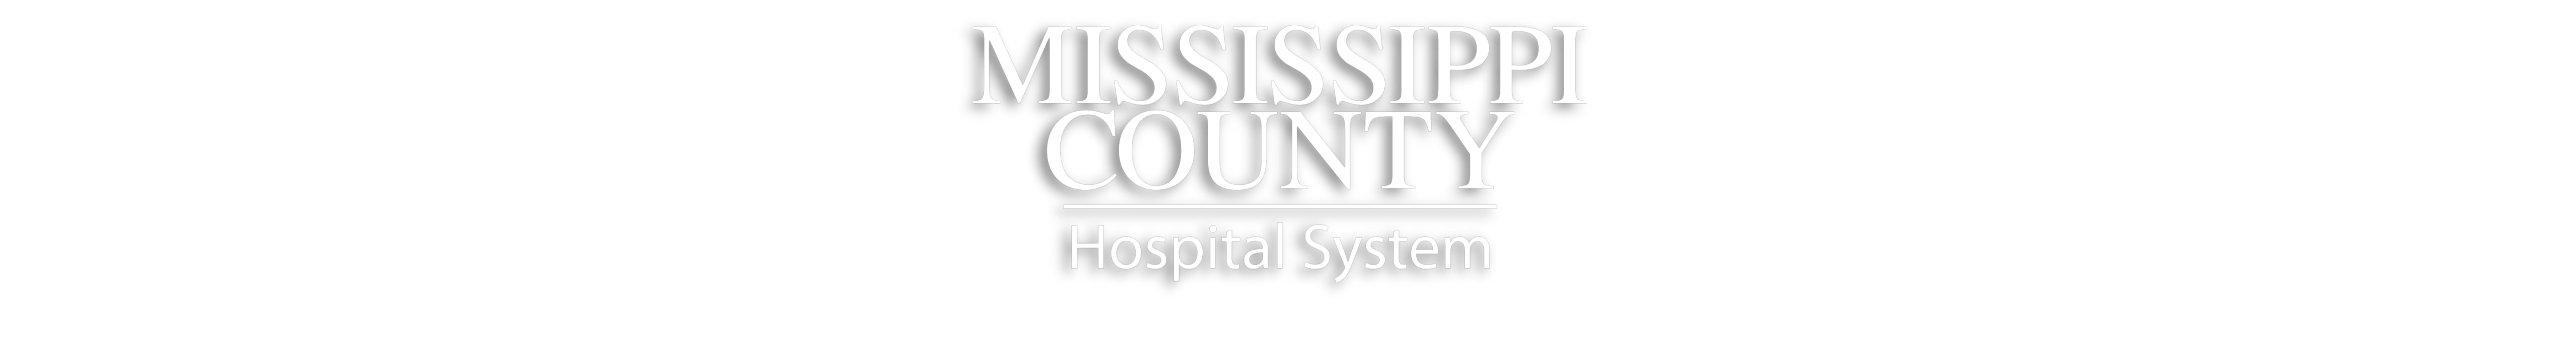 Mississippi County Hospital System Logo

Great River Medical Center + SMC Regional Medical Center